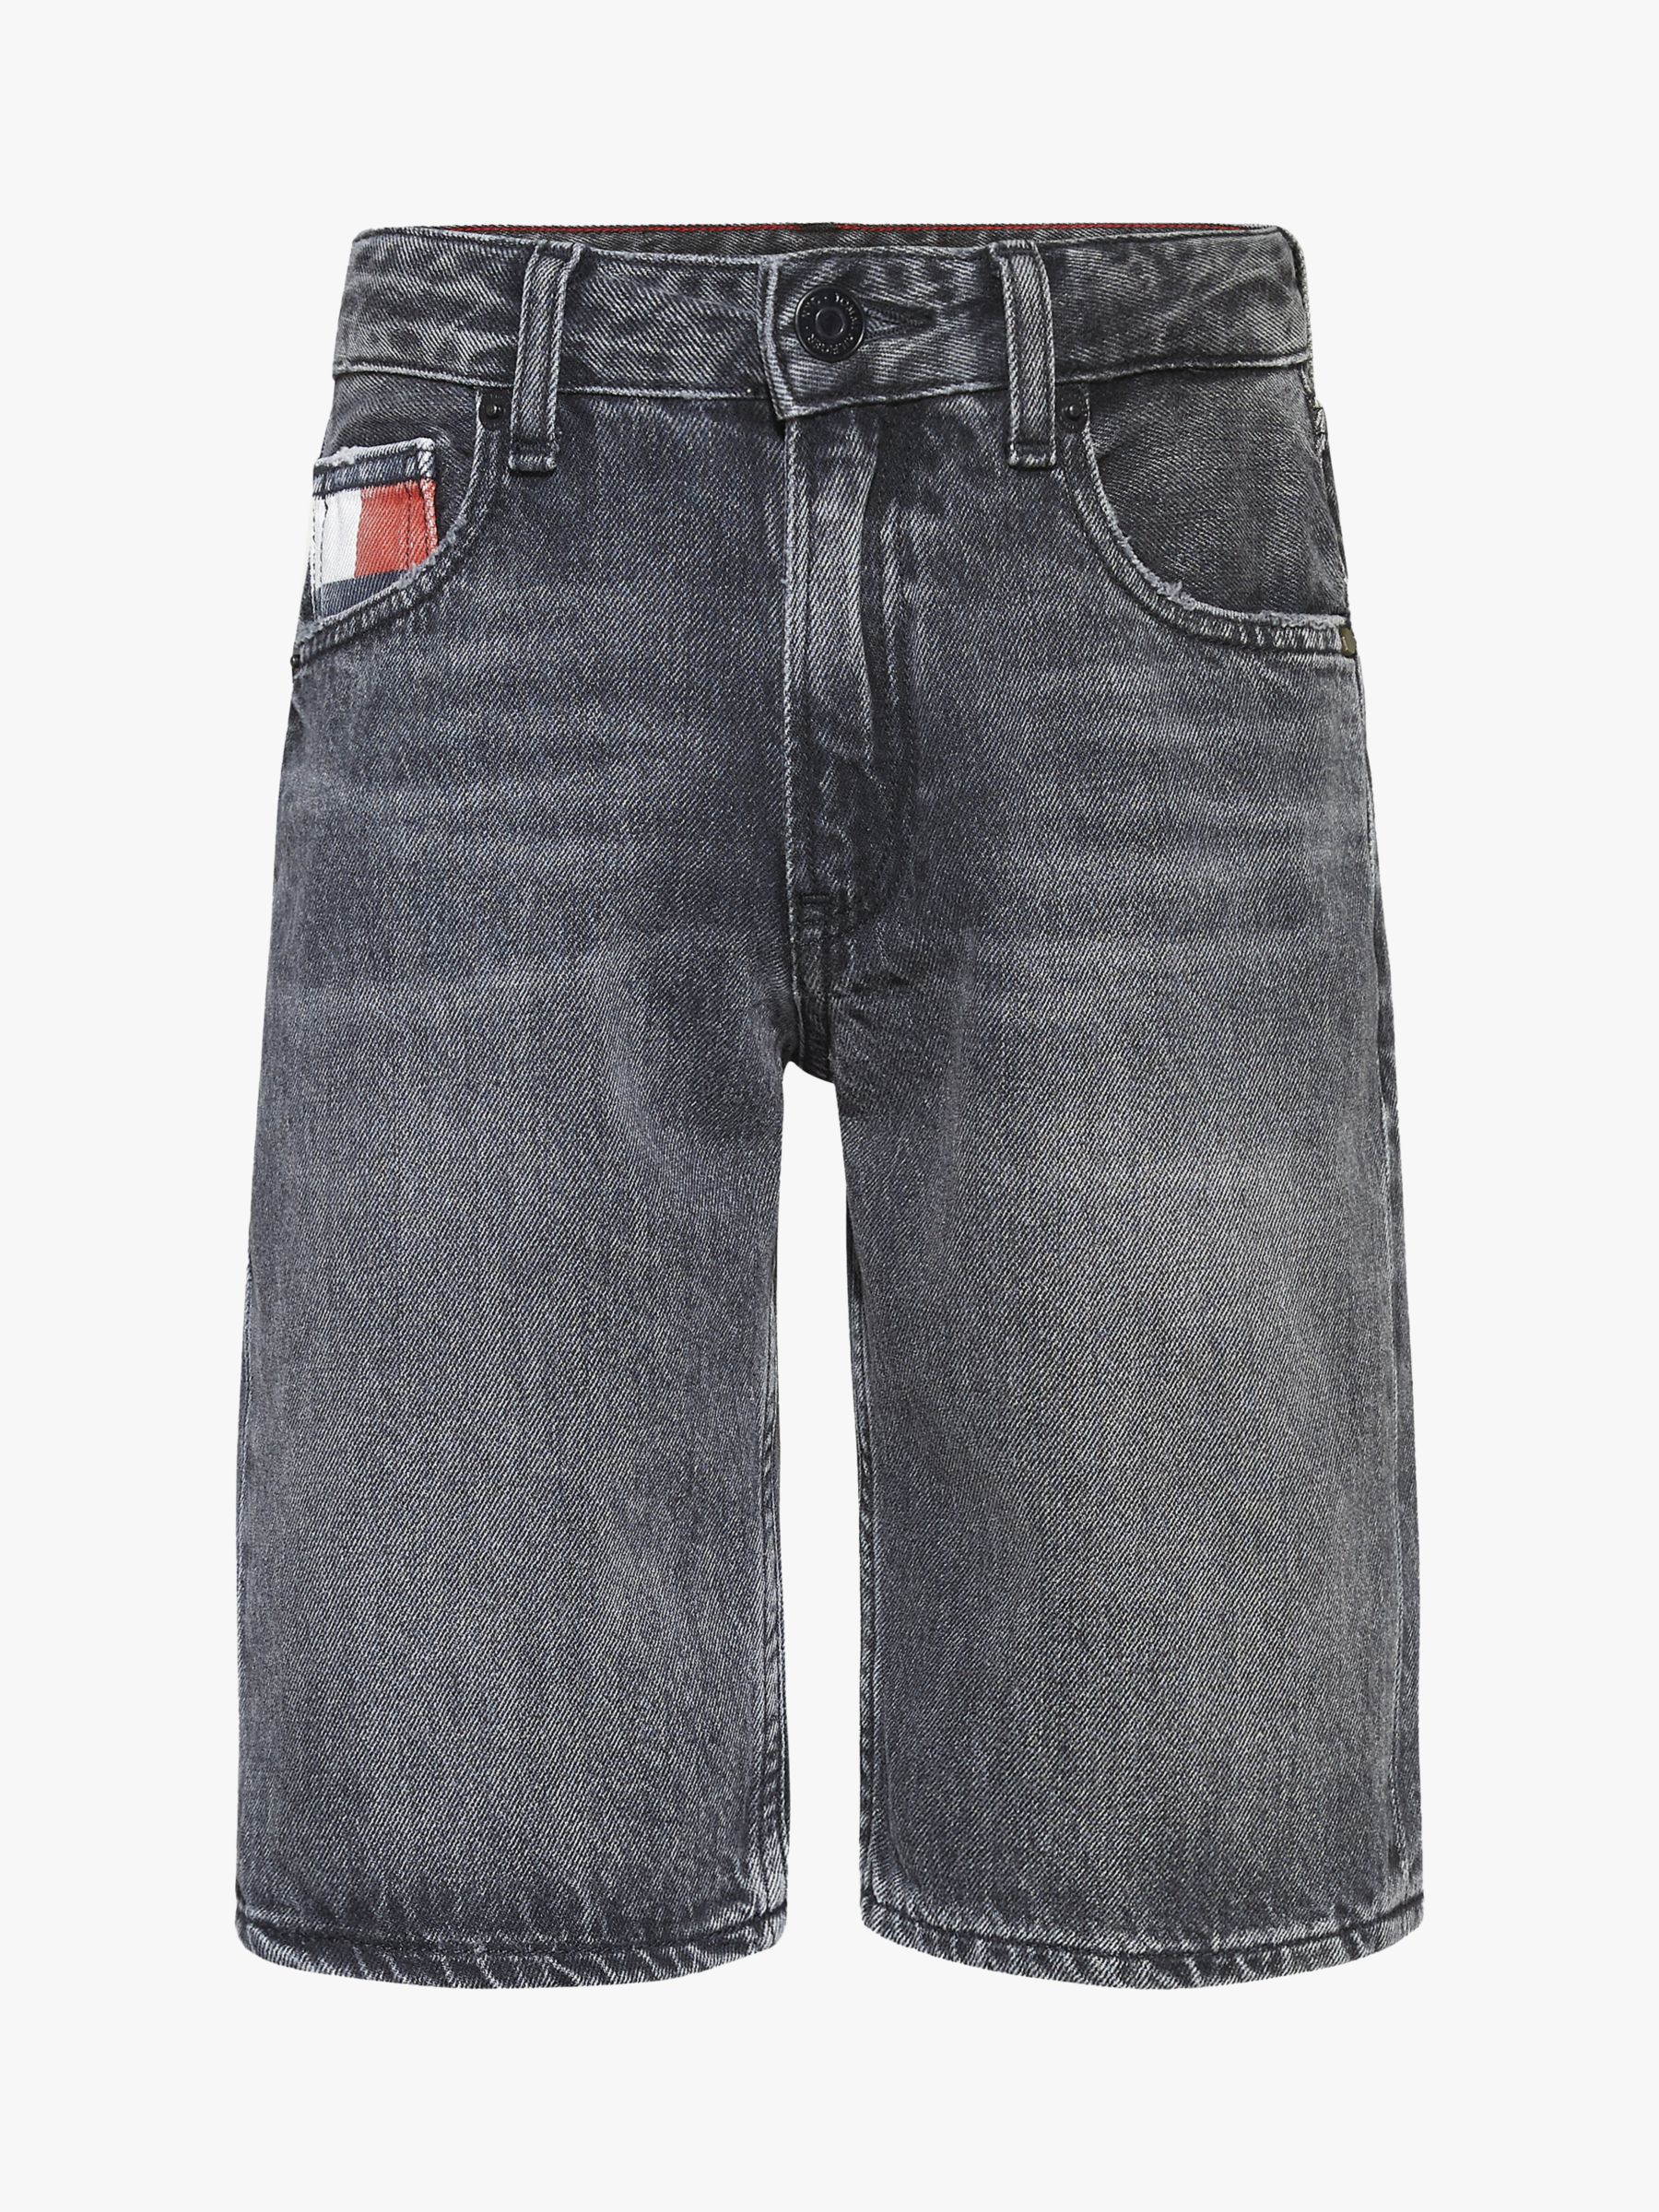 Tommy Hilfiger Boys' Modern Straight Fit Denim Shorts, Grey Wash